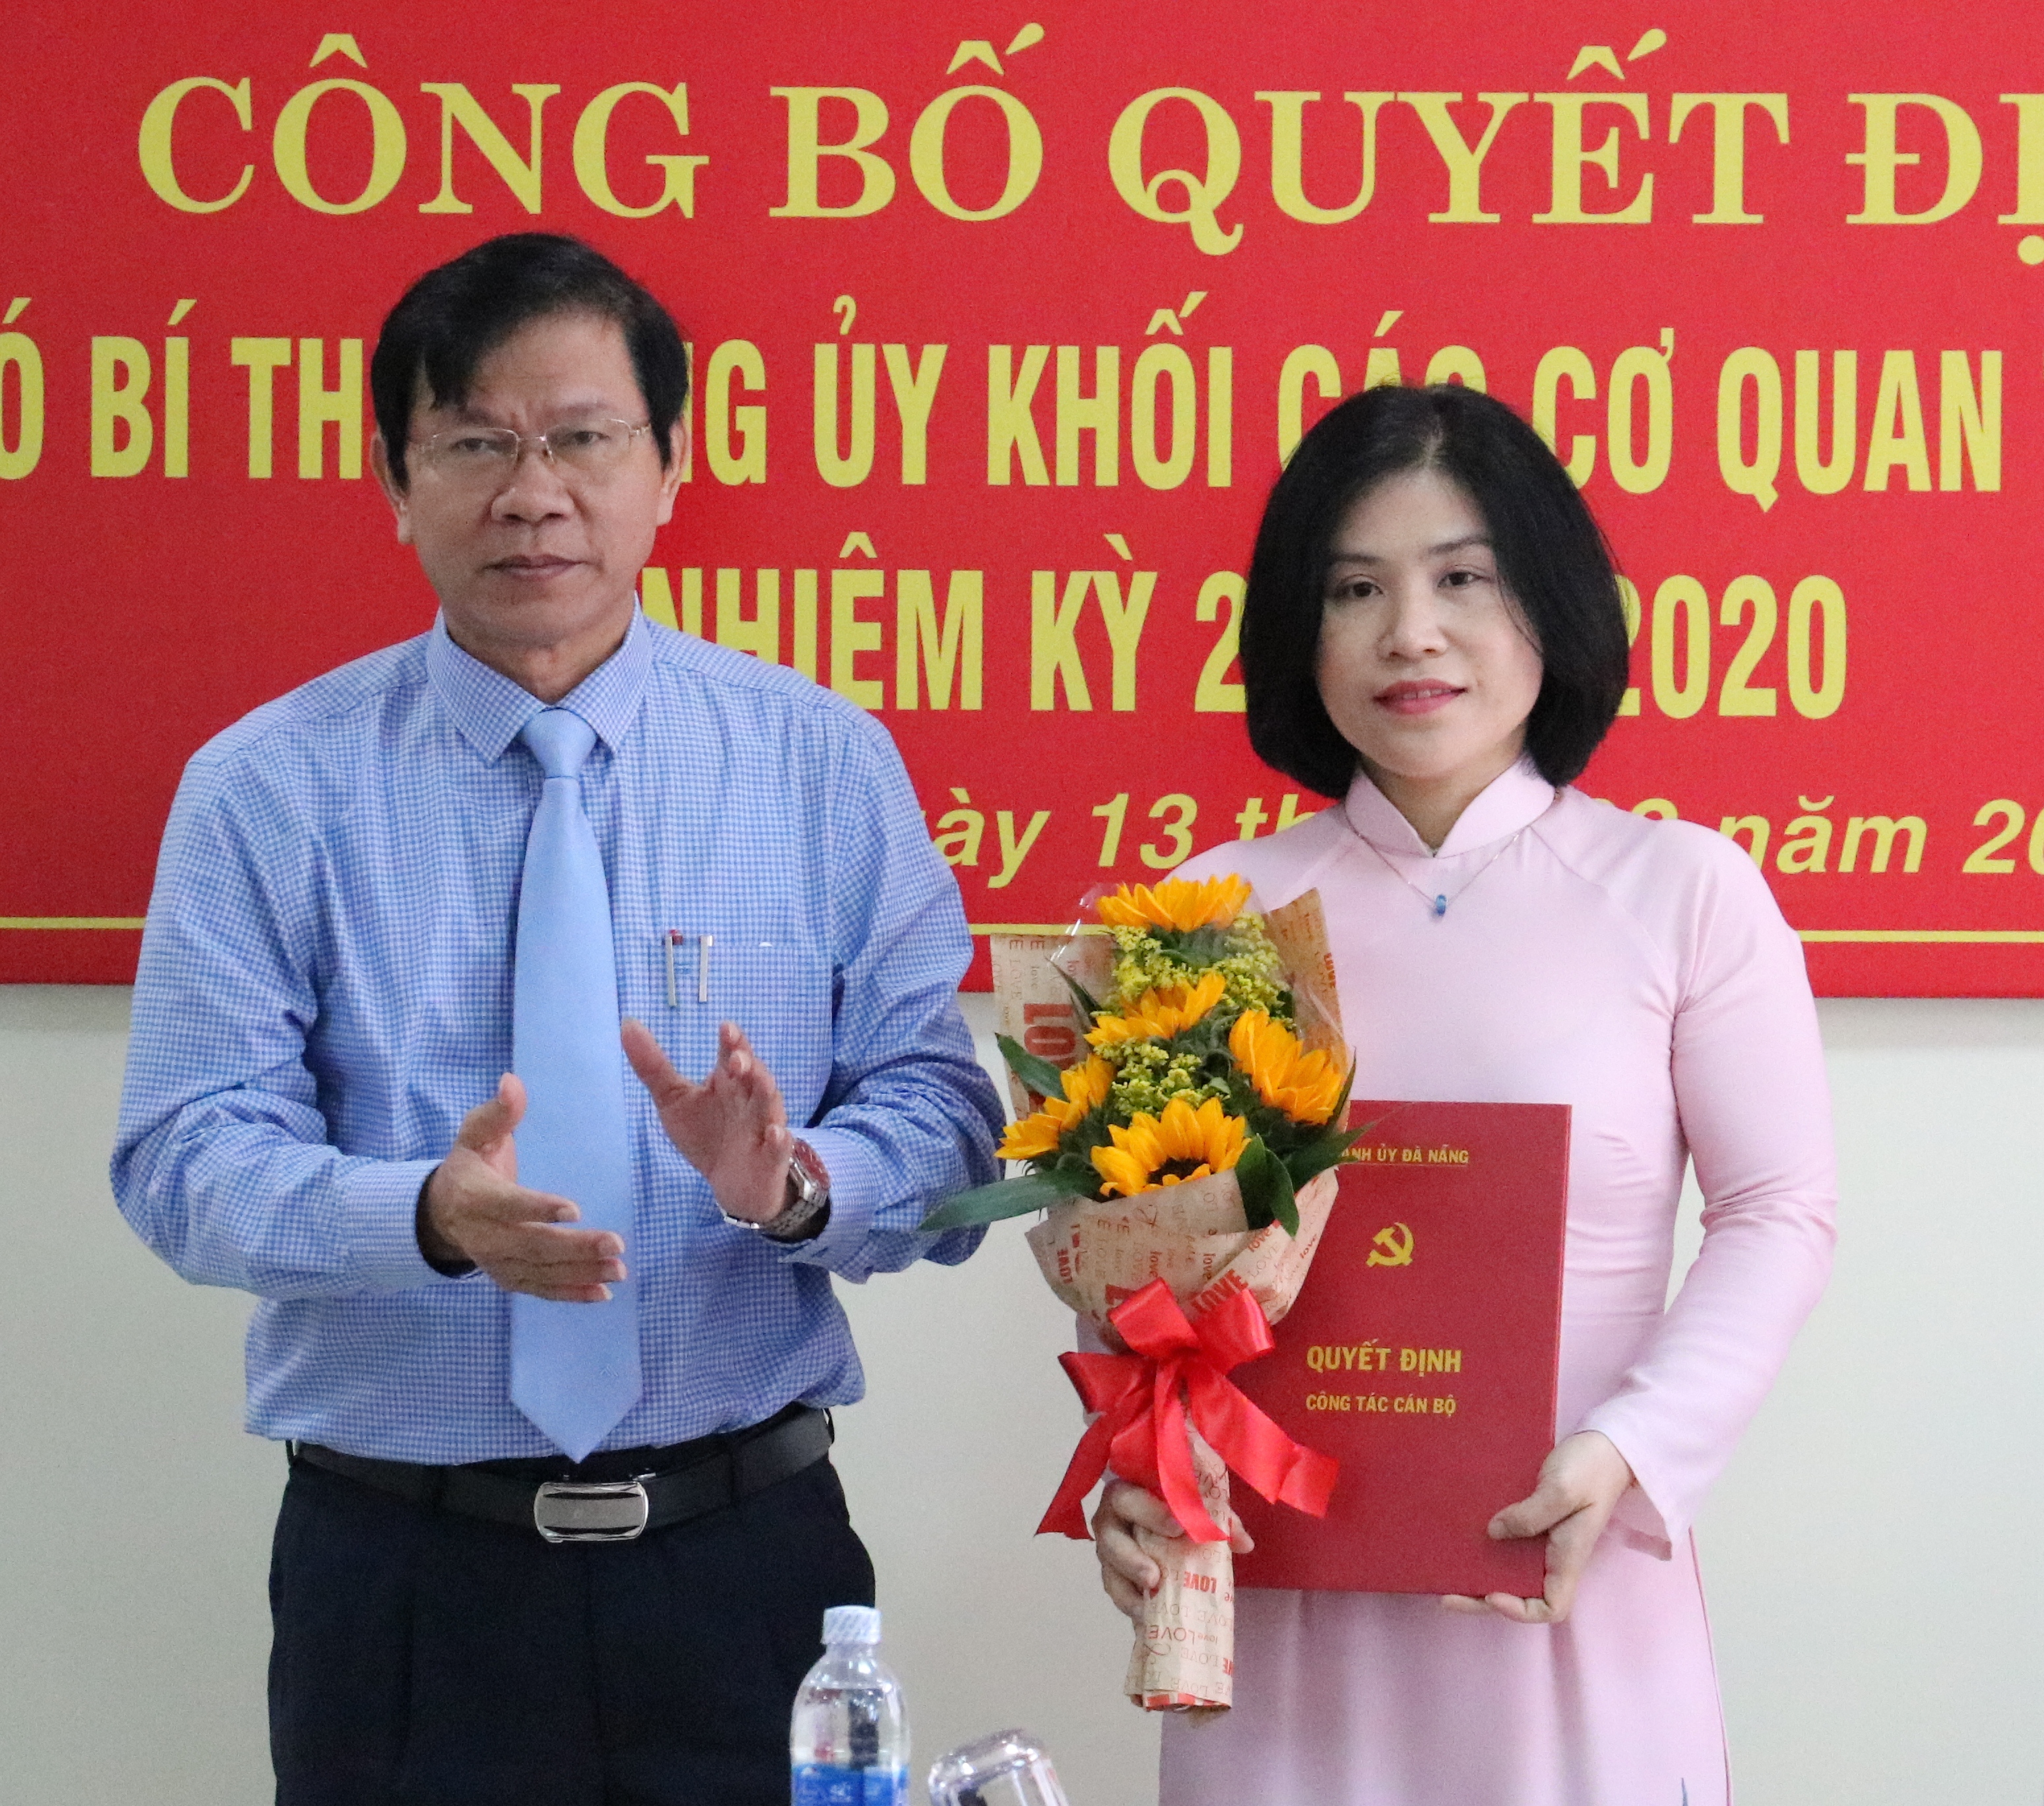 Bà Nguyễn Thị Kim Hoa giữ chức Phó Bí thư Đảng ủy khối Các cơ quan thành phố